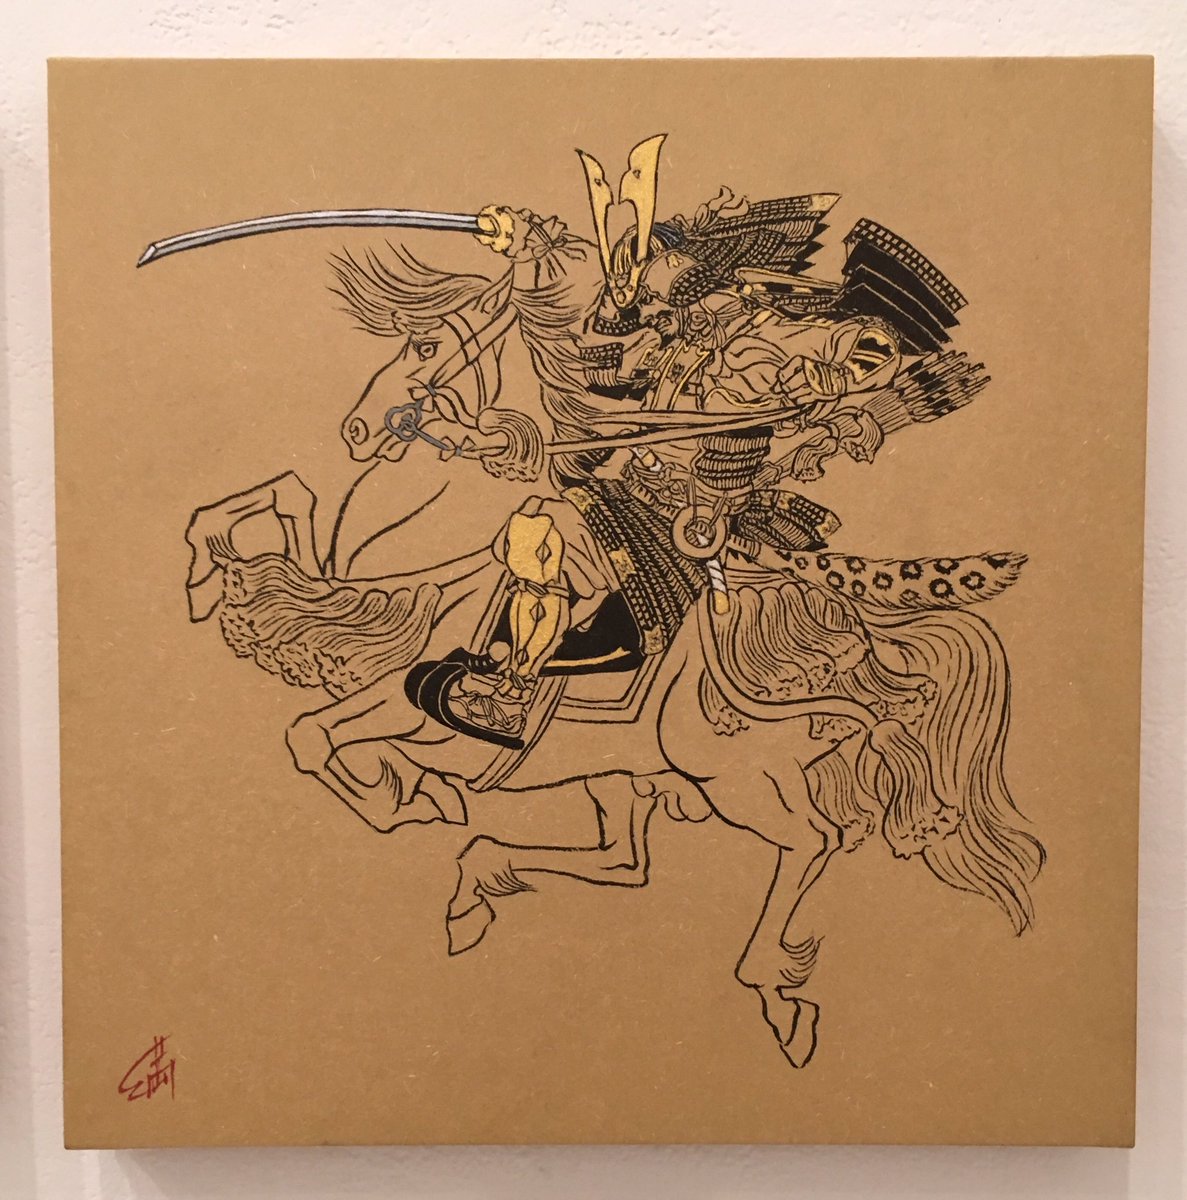 線画展2017も終わったので、出展したアナログ絵を公開。
作品➀『室町大将軍』
レコード盤サイズ パネル張り。 